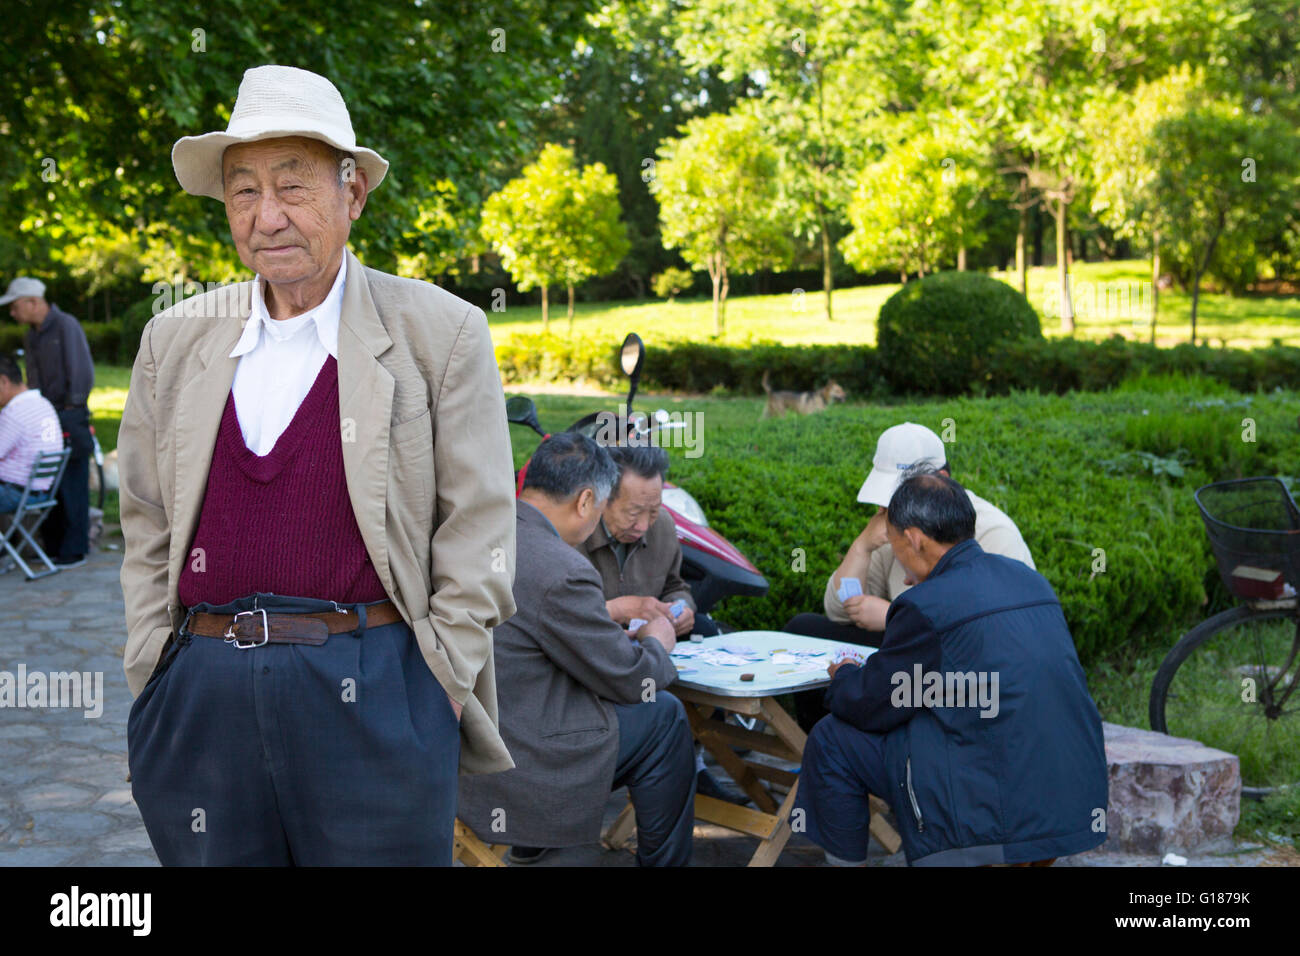 Porträt eines chinesischen Mann mit einem weißen Hut in einem Park mit Menschen Spielkarten im Hintergrund an einem sonnigen Tag Stockfoto